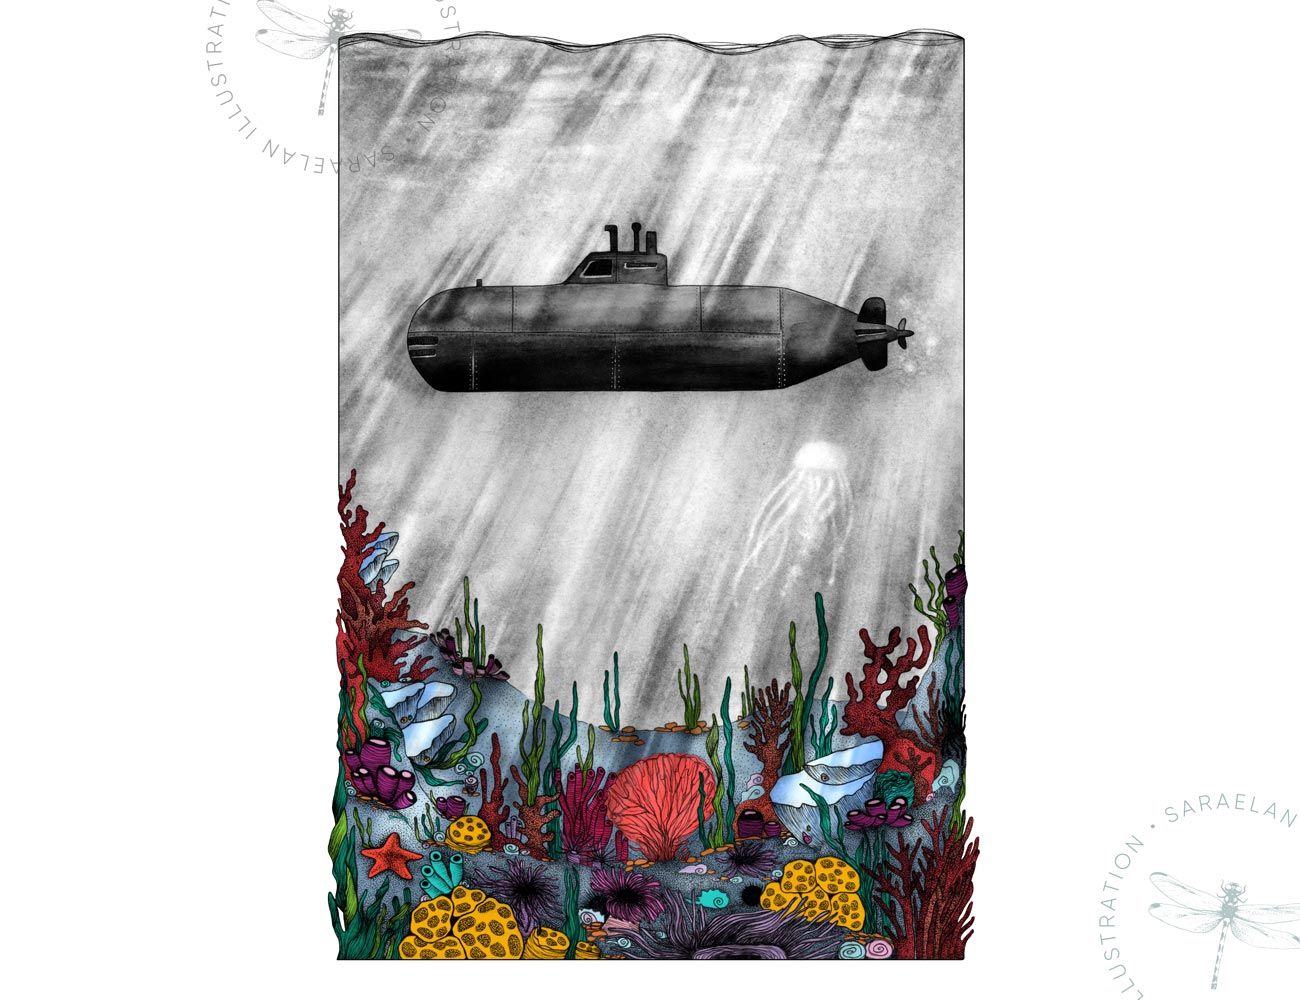 Deus ex Machina illustrazioni di paesaggi e mezzi di trasporto del 1900 a colori - sottomarino con fondale marino colorato